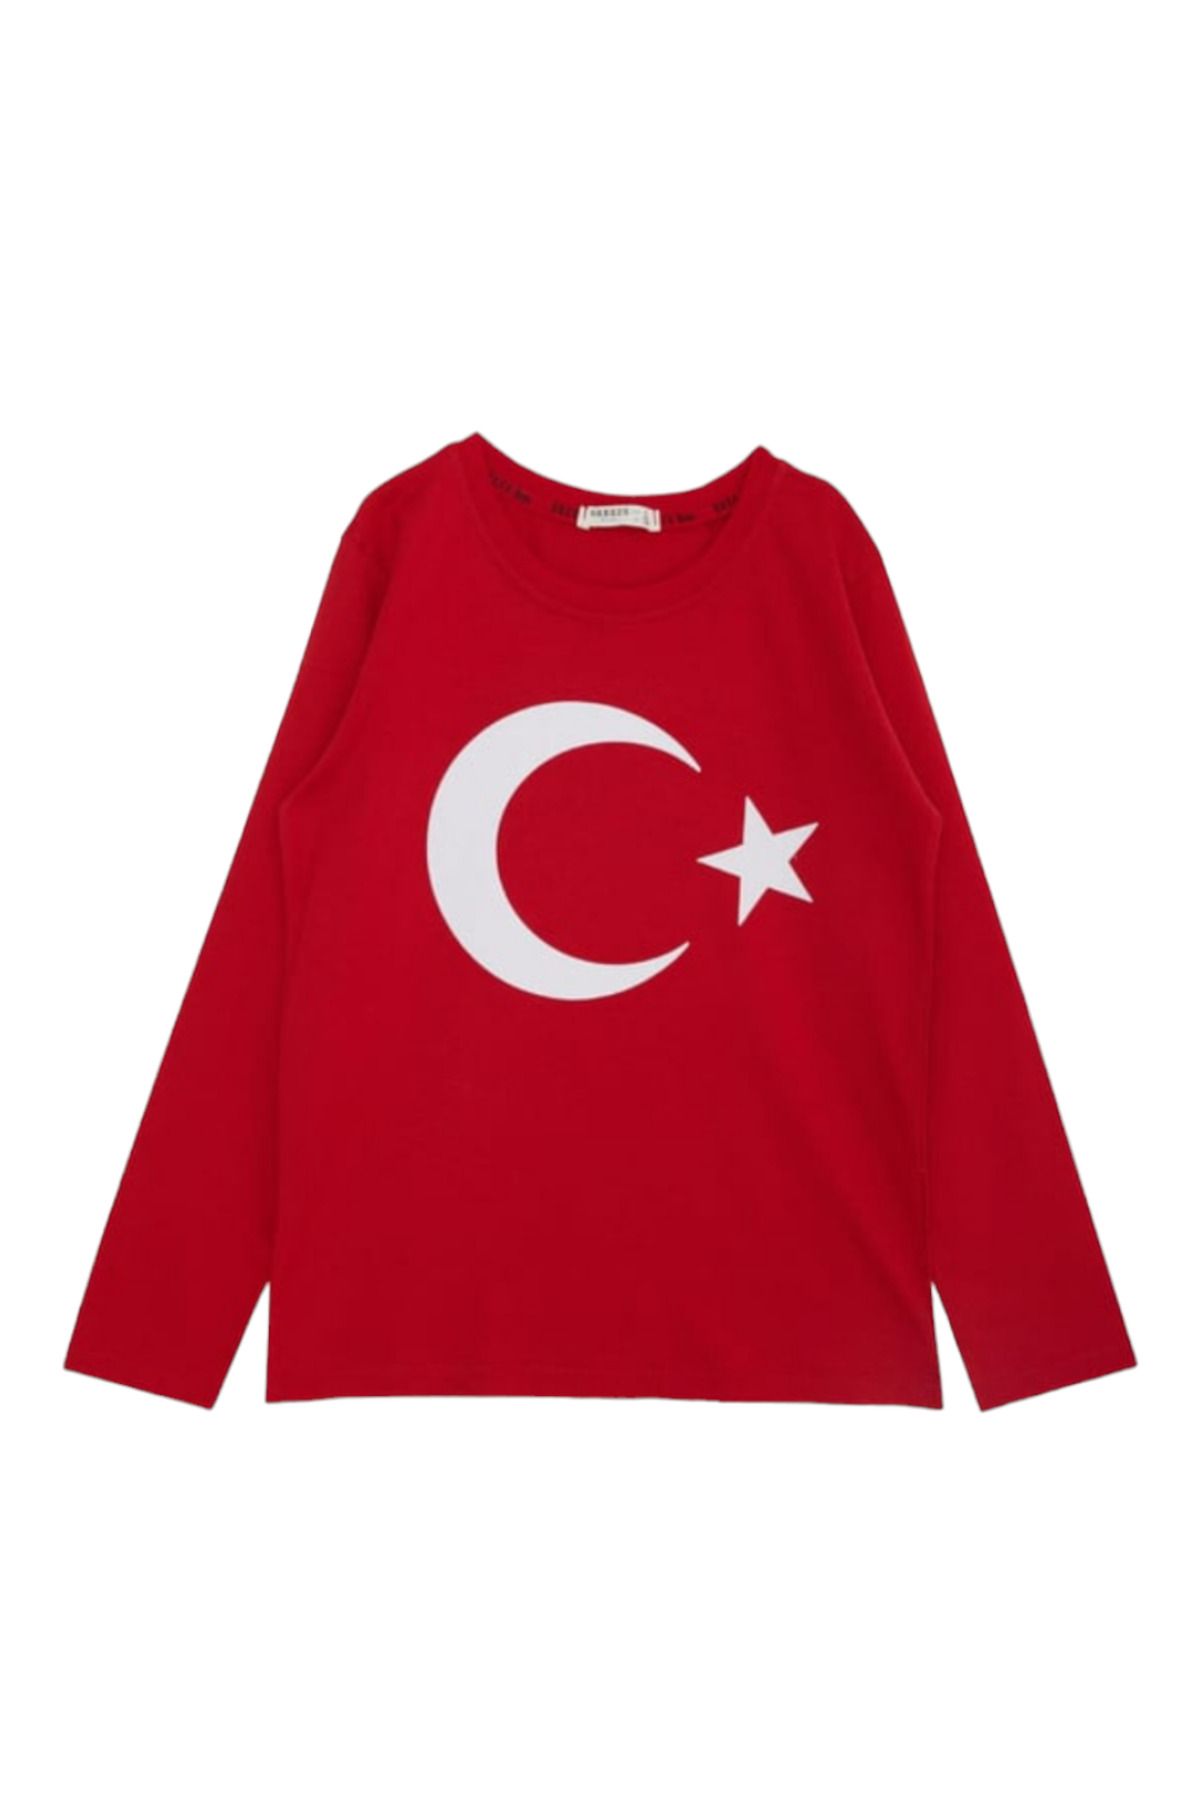 Breeze Erkek Çocuk Kız Çocuk Ay Yıldız Türk Bayraklı Kırmızı Mevsimlik Tshırt